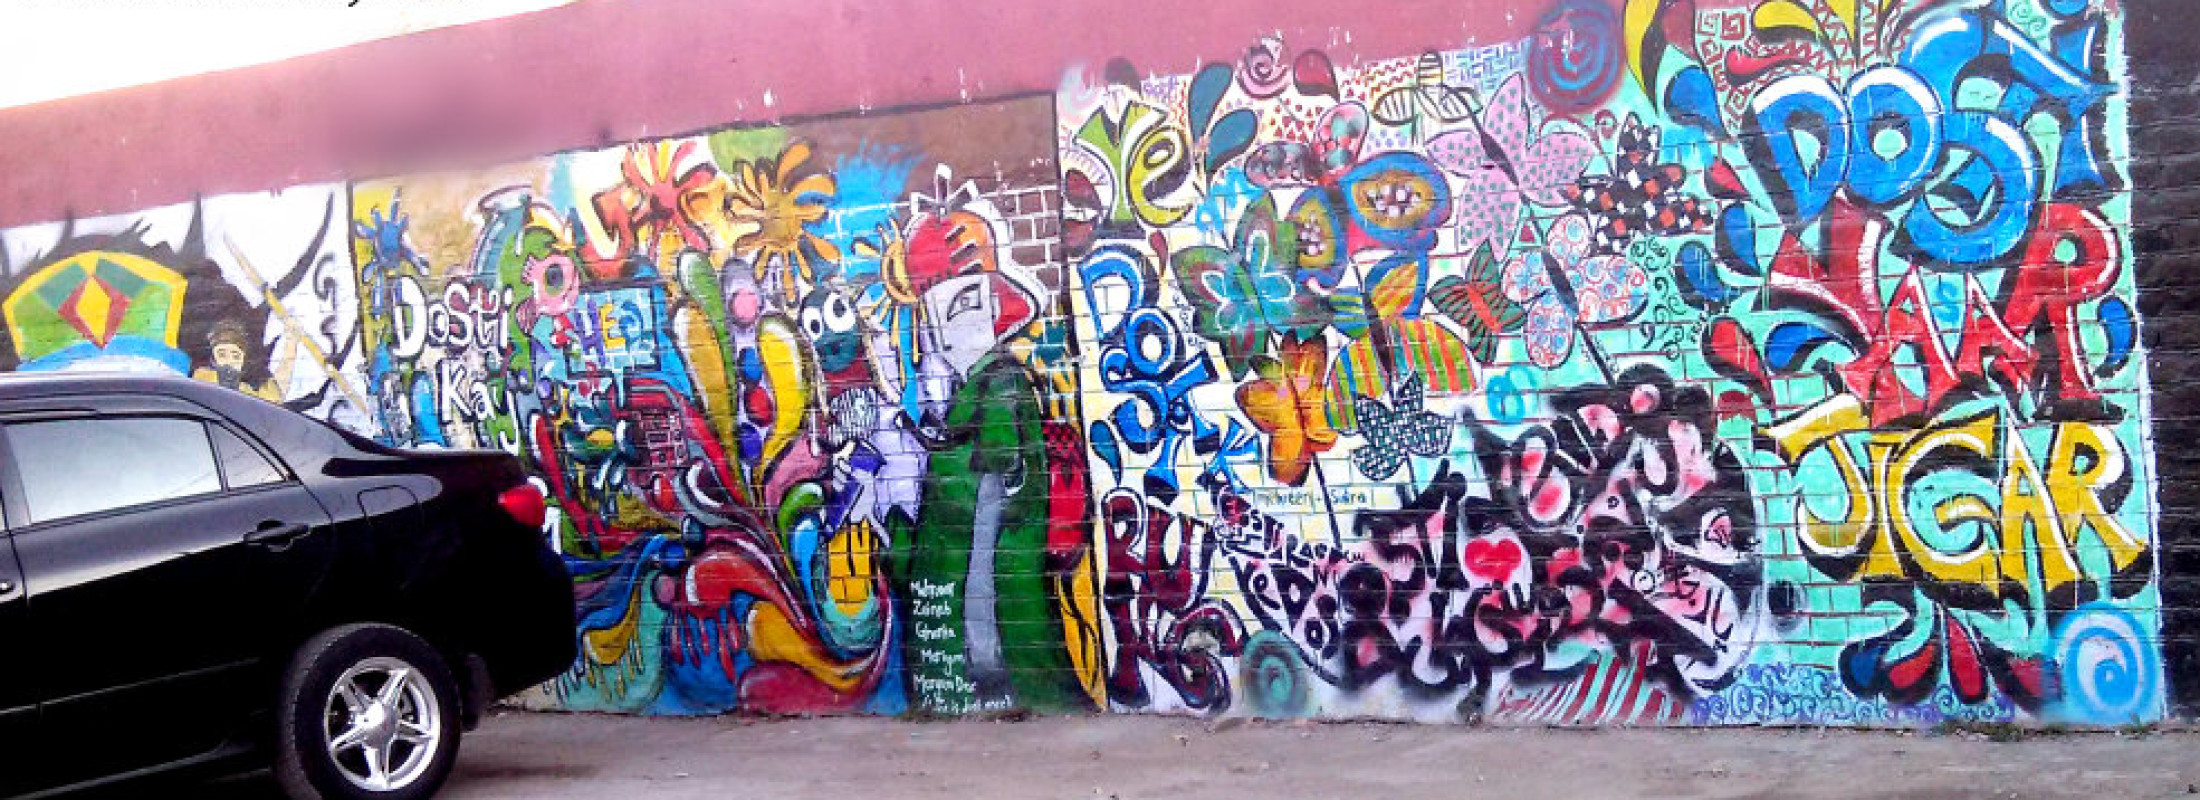 Street Graffiti Art Pakistan-2